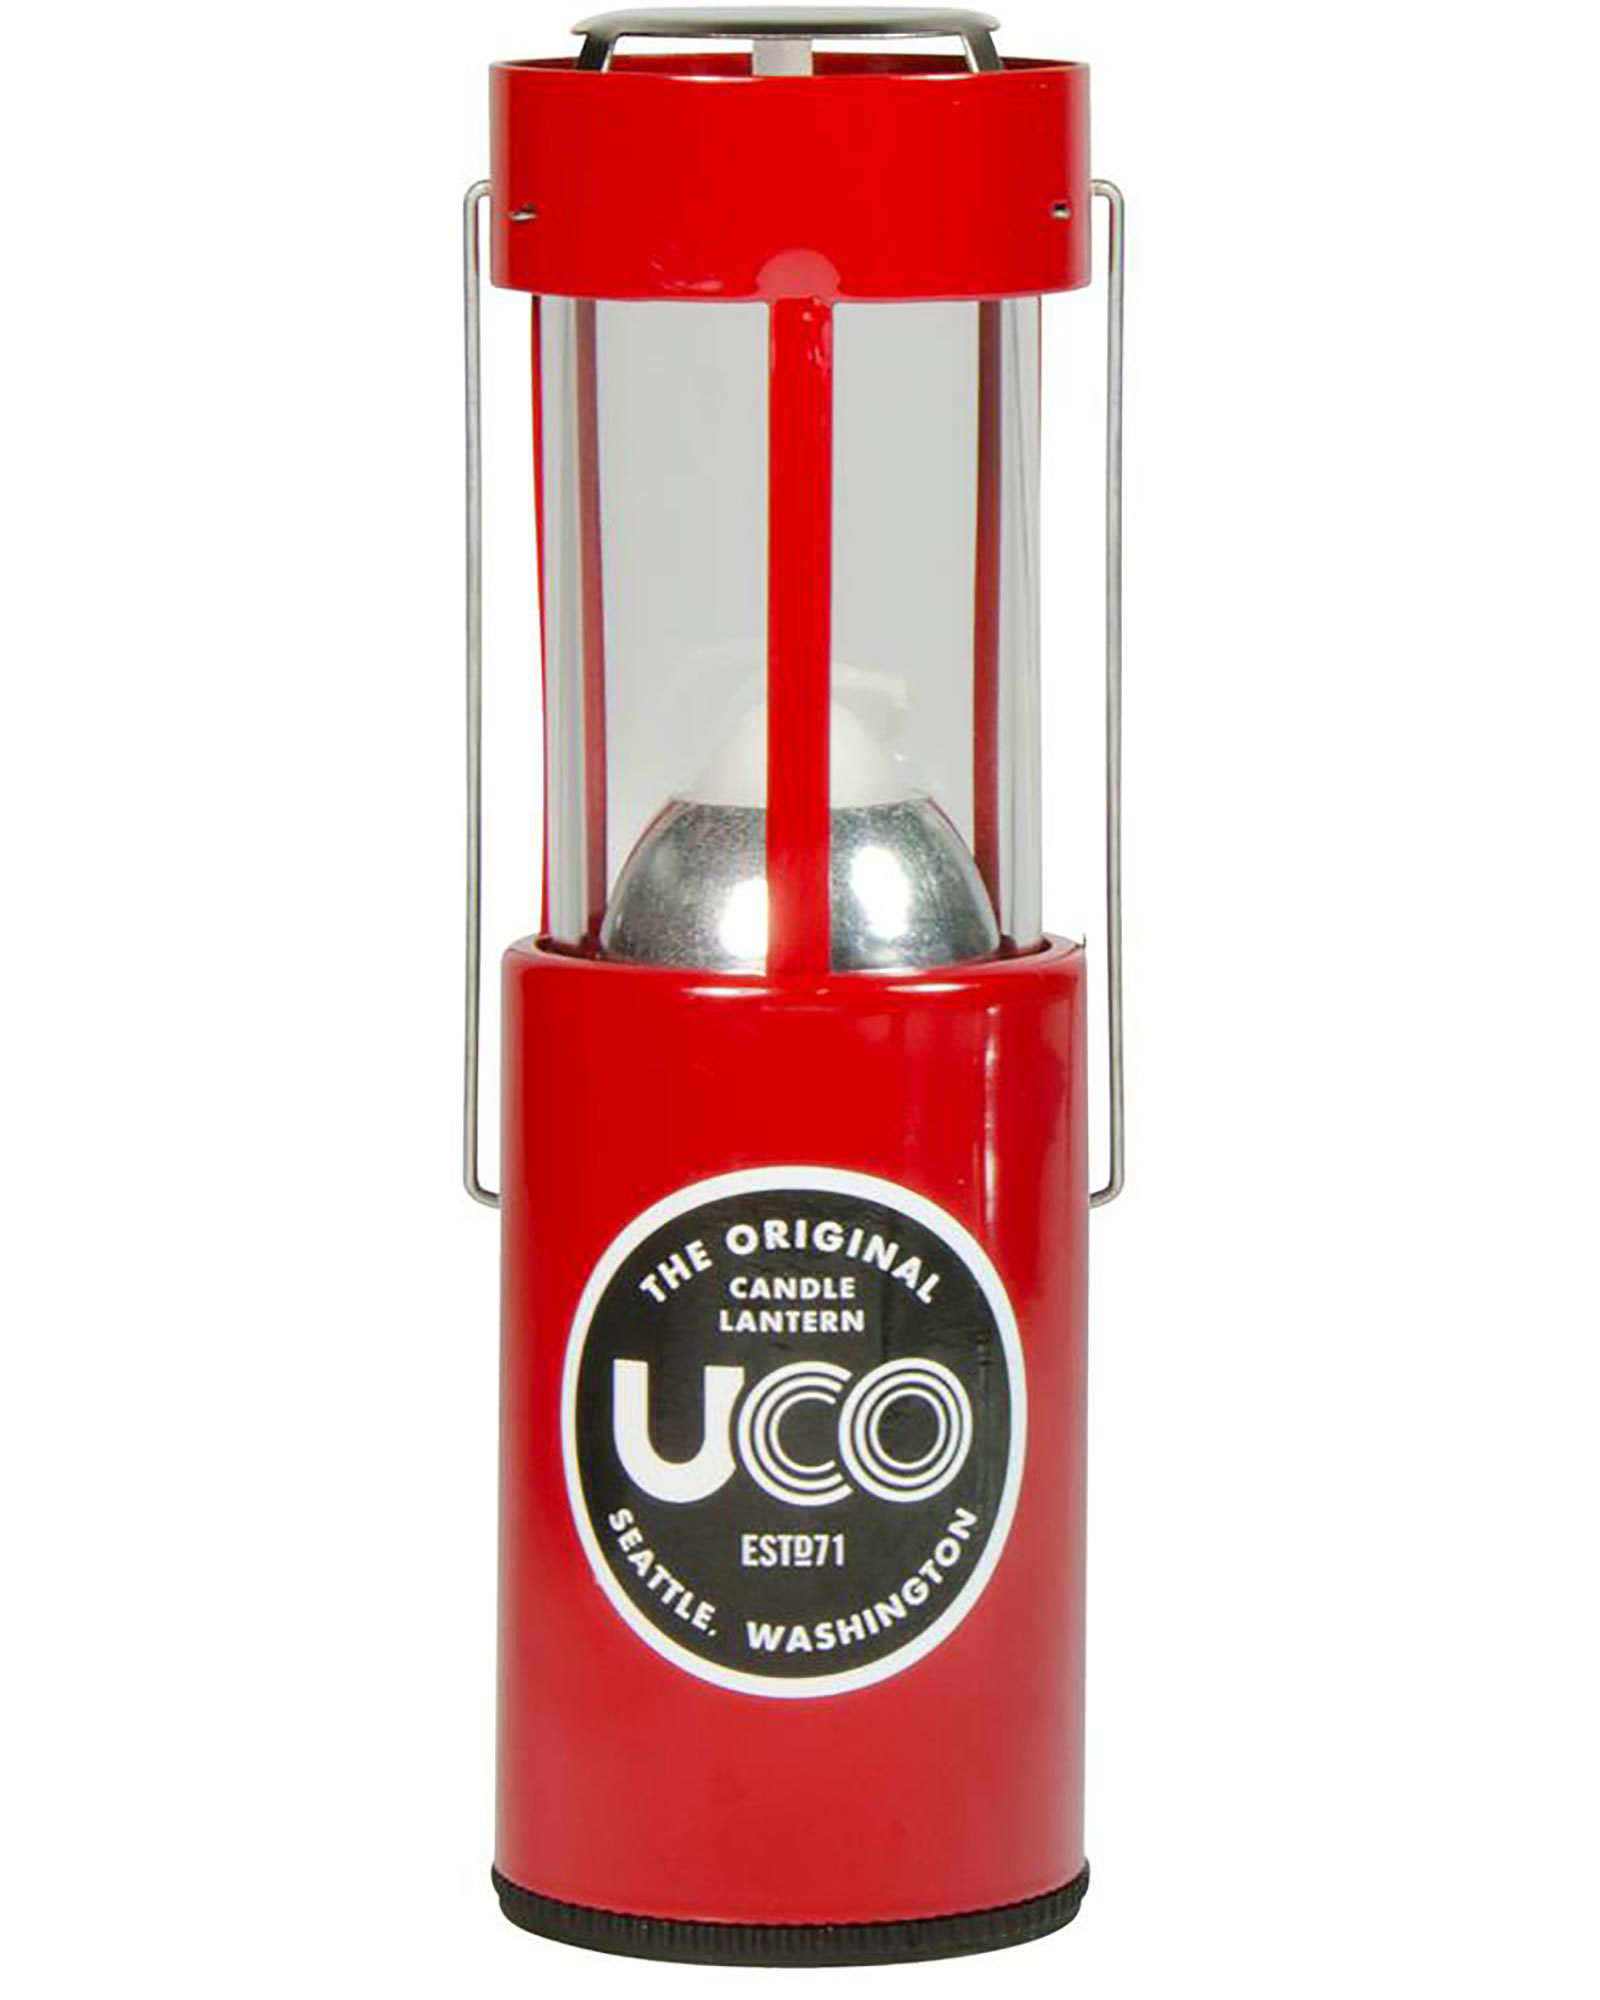 UCO Original Candle Lantern  - Red